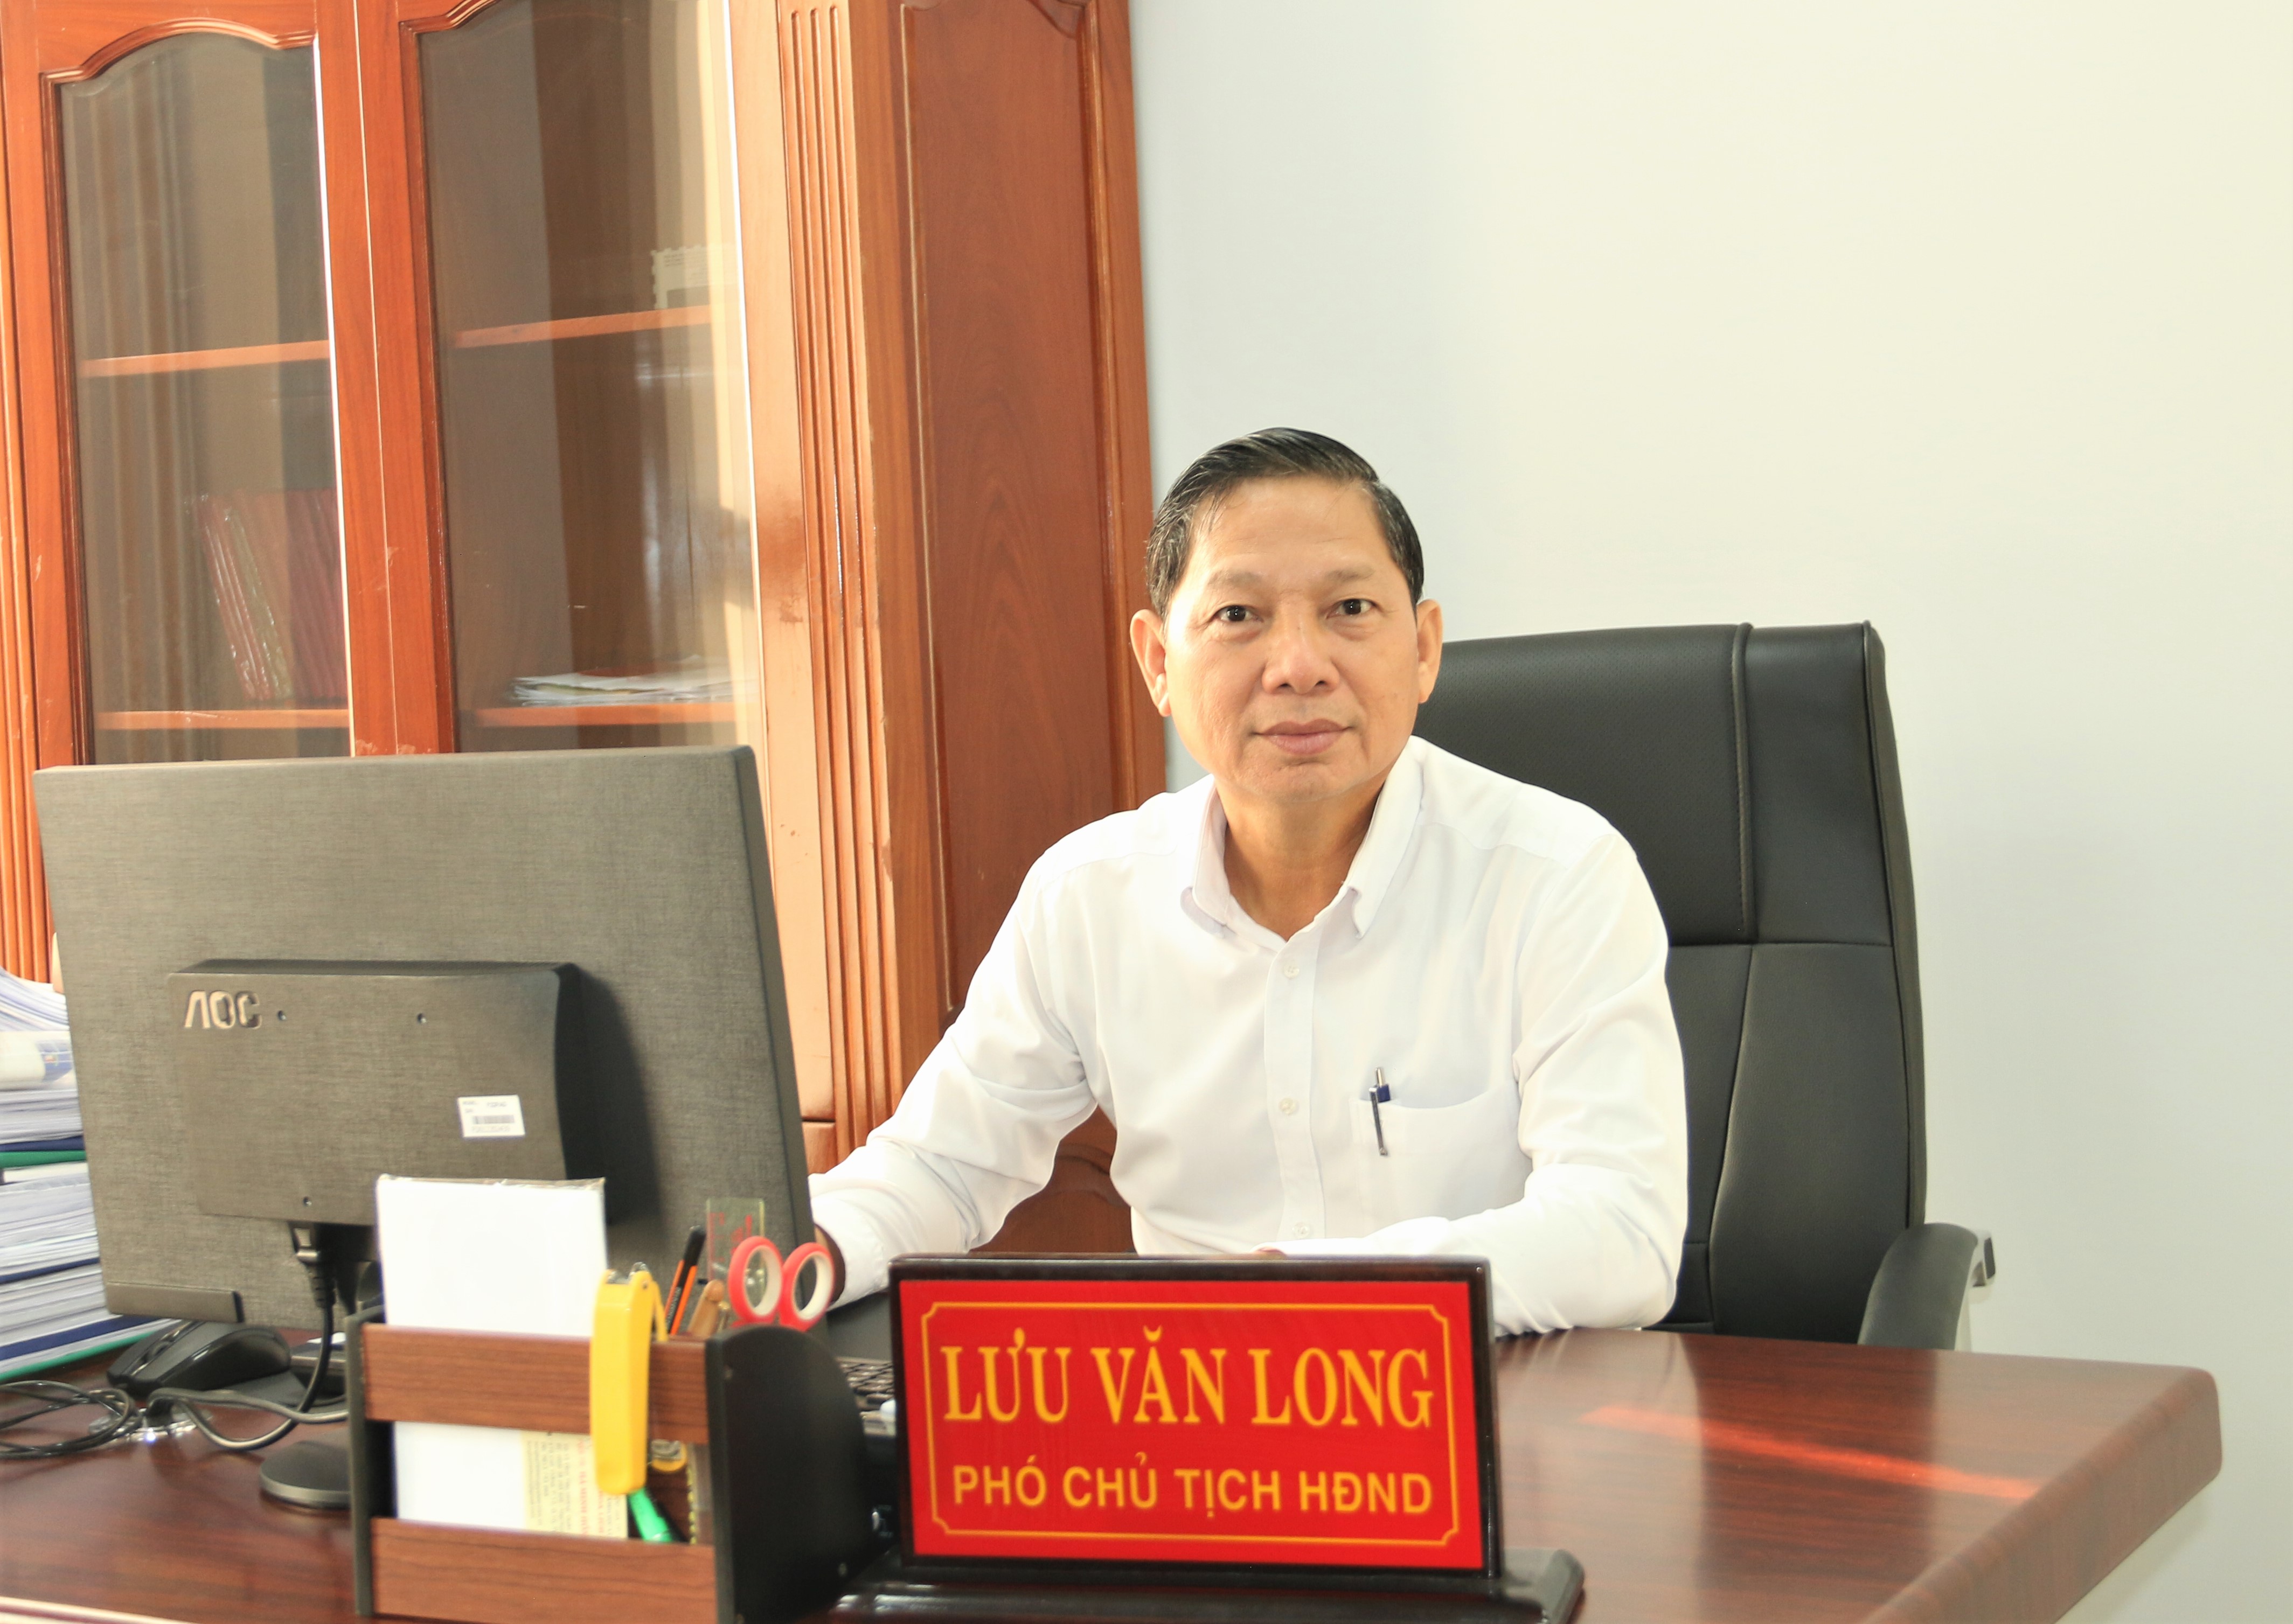 Bàu Bàng, chuẩn bị tốt cho kỳ họp thứ 5 (thường lệ cuối năm 2022) - HĐND huyện Bàu Bàng khóa III, nhiệm kỳ 2021-2026.